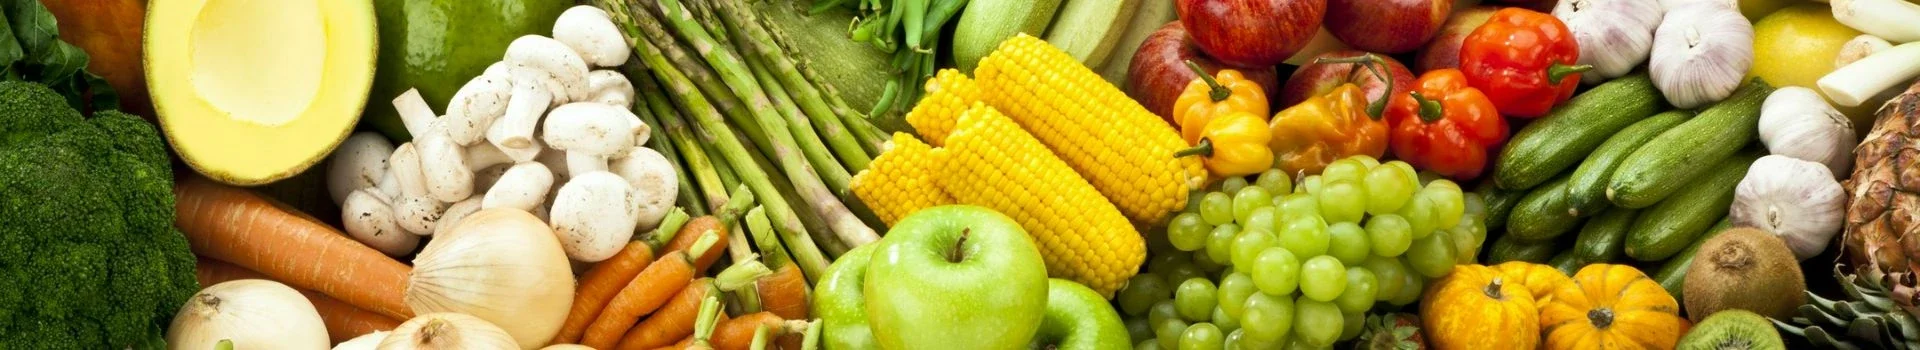 świeże i zdrowe owoce i warzywa